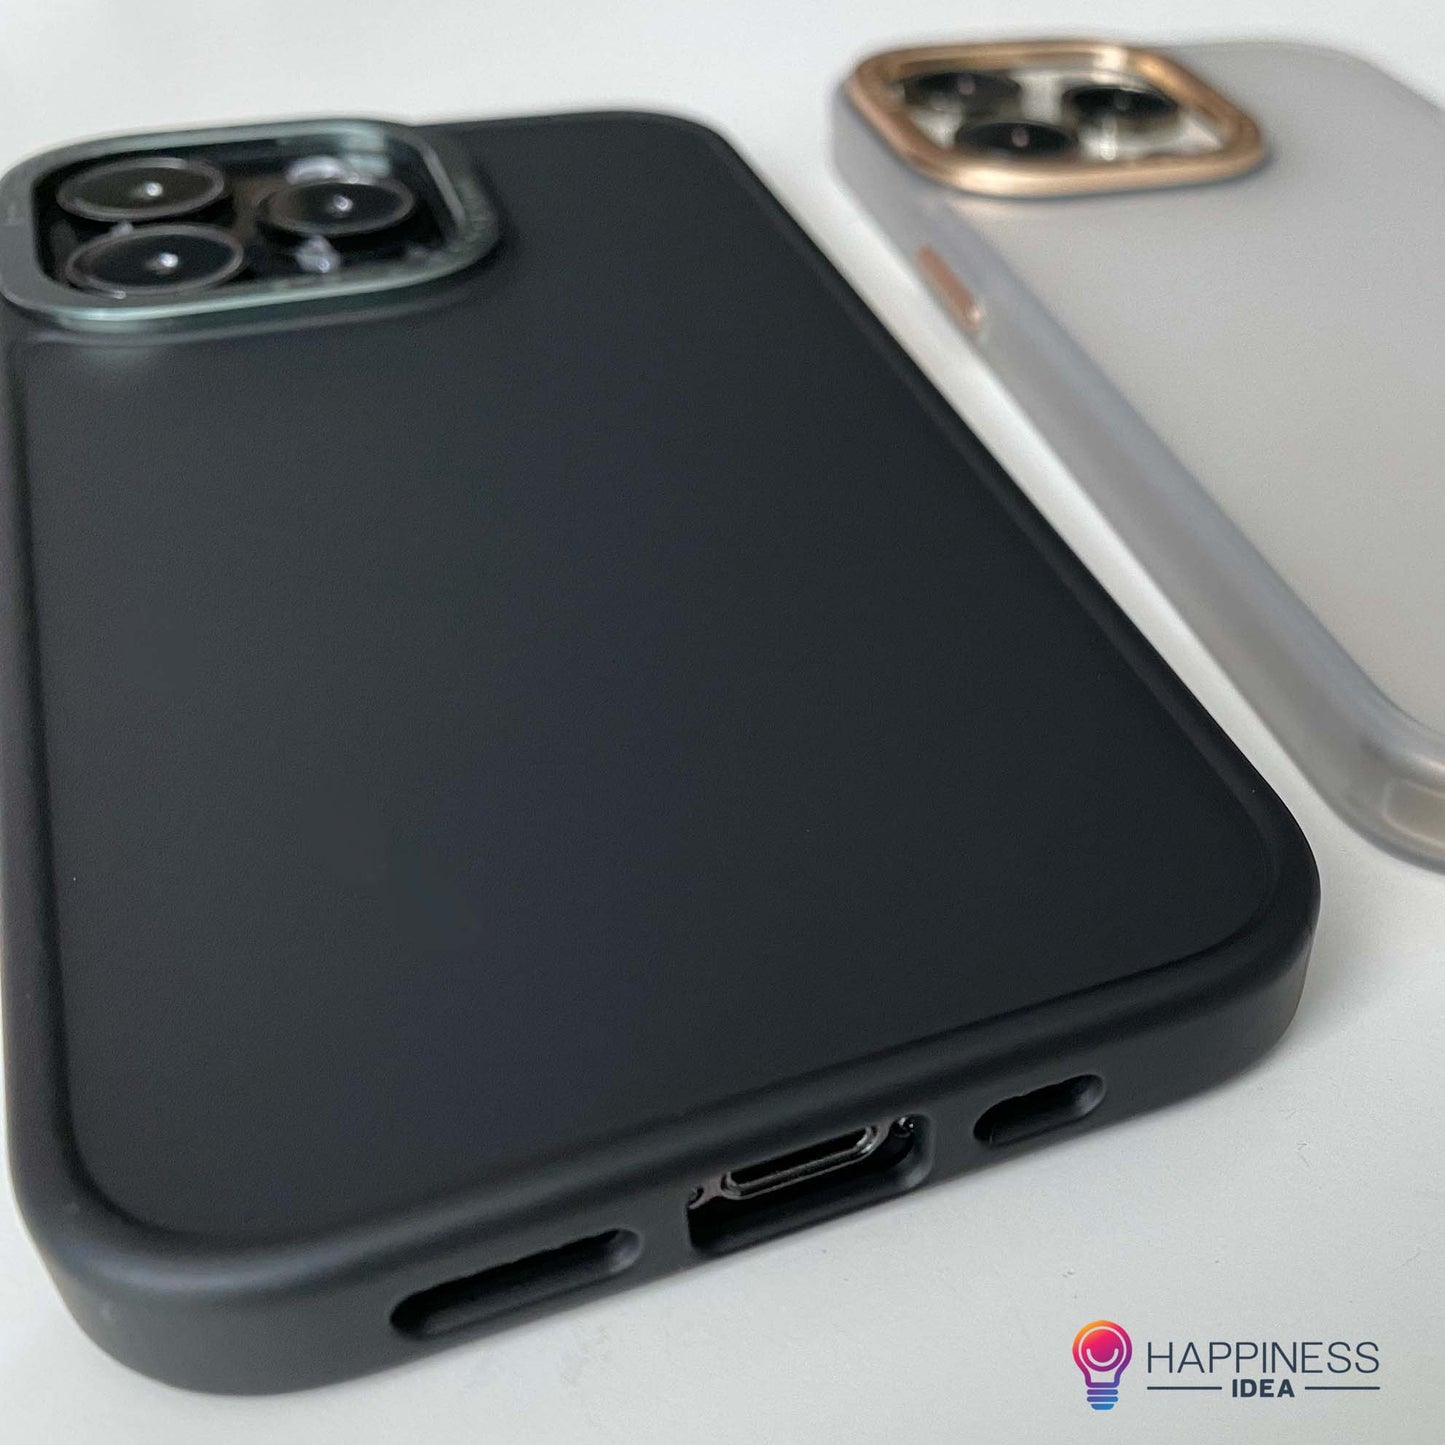 iPhone Body Guard Case Premium (Customisable)